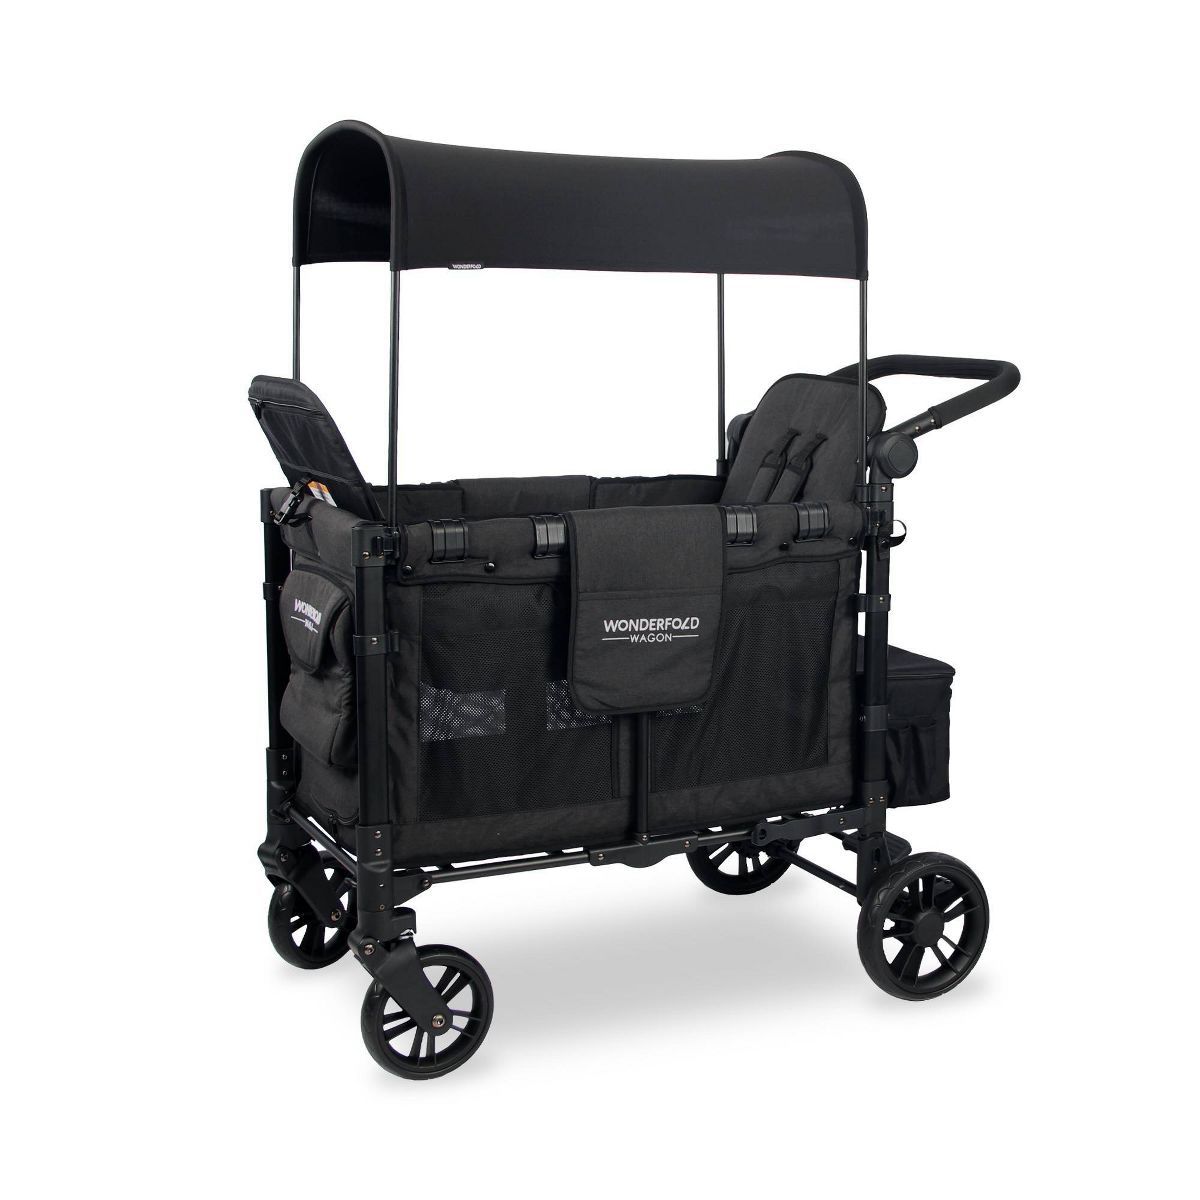 WONDERFOLD W2 Elite Double Folding Stroller Wagon | Target